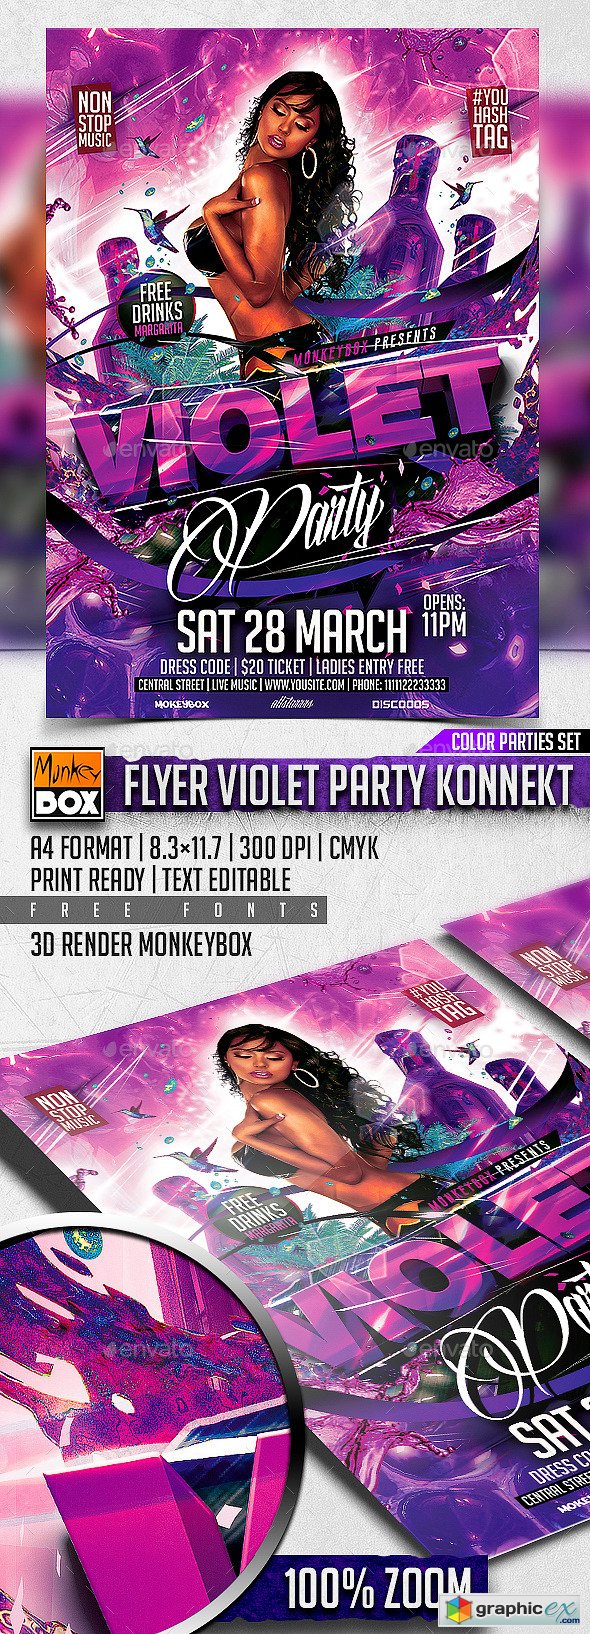  Flyer Violet Party Konnekt 